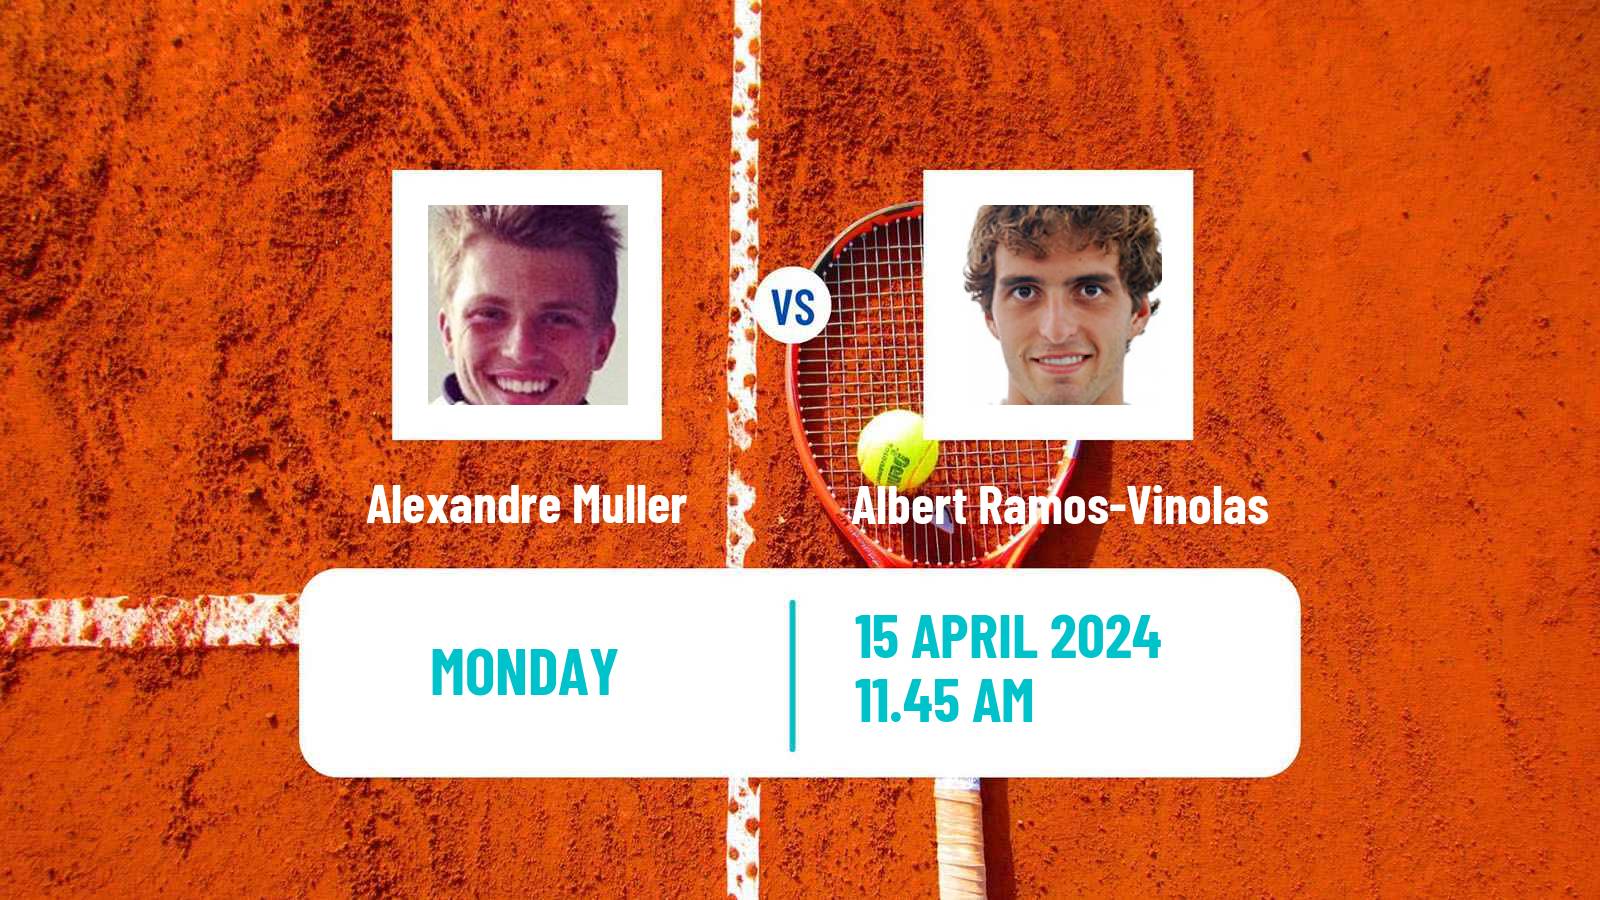 Tennis ATP Barcelona Alexandre Muller - Albert Ramos-Vinolas